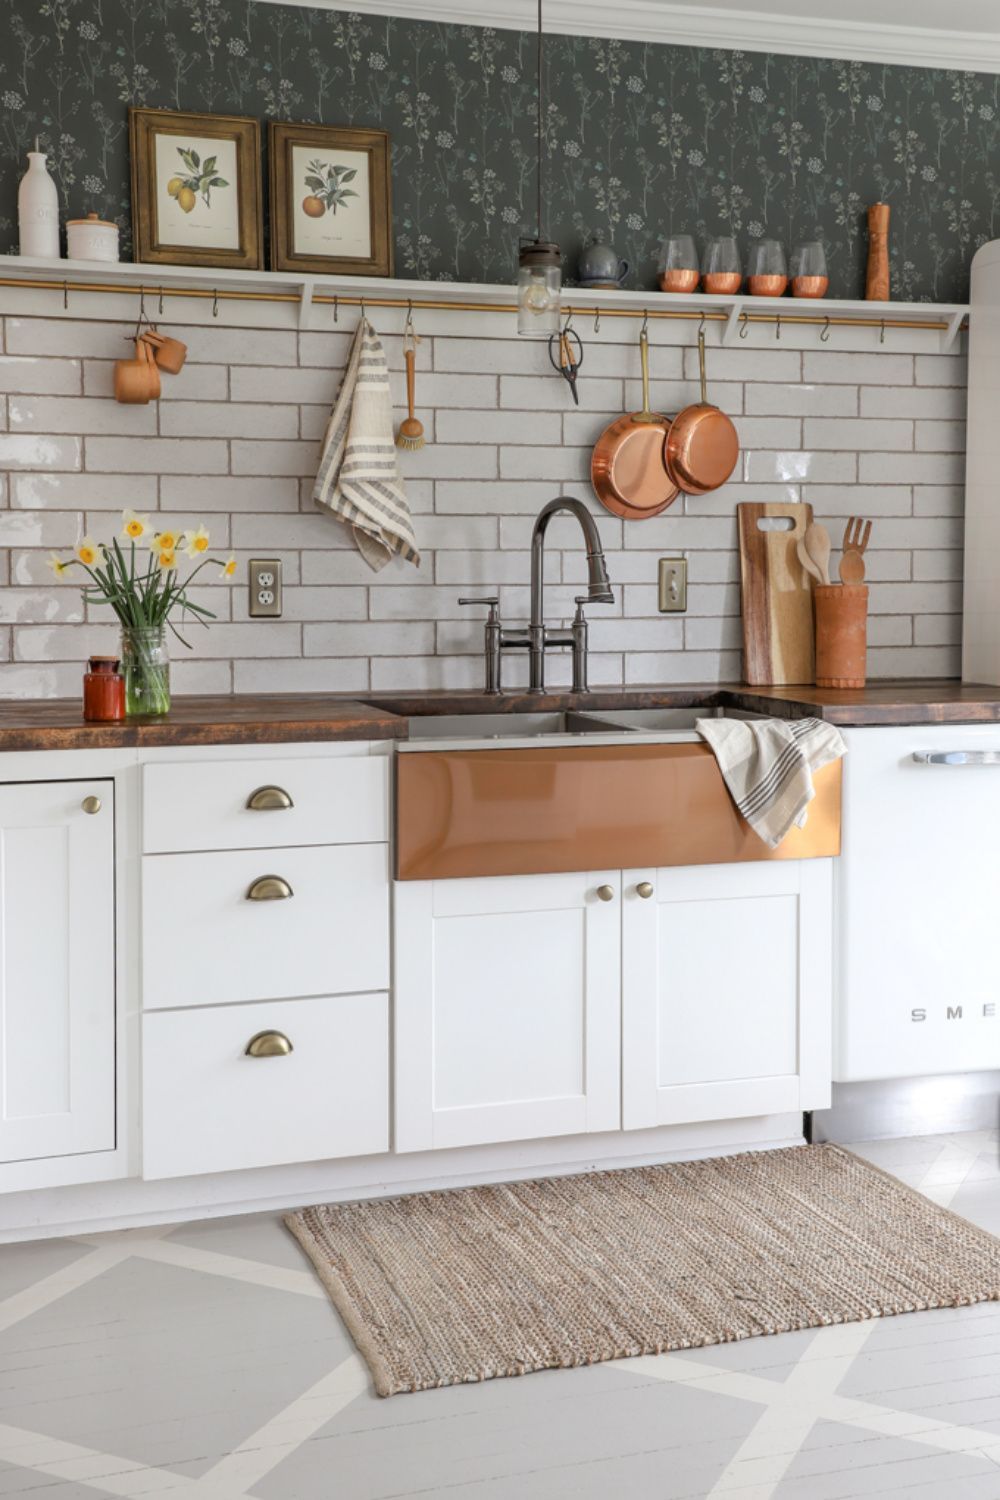 Trang trí nhà bếp bằng giấy dán tường dễ dàng, đơn giản và tiết kiệm rõ ràng so với dùng gạch ốp - Ảnh 12.